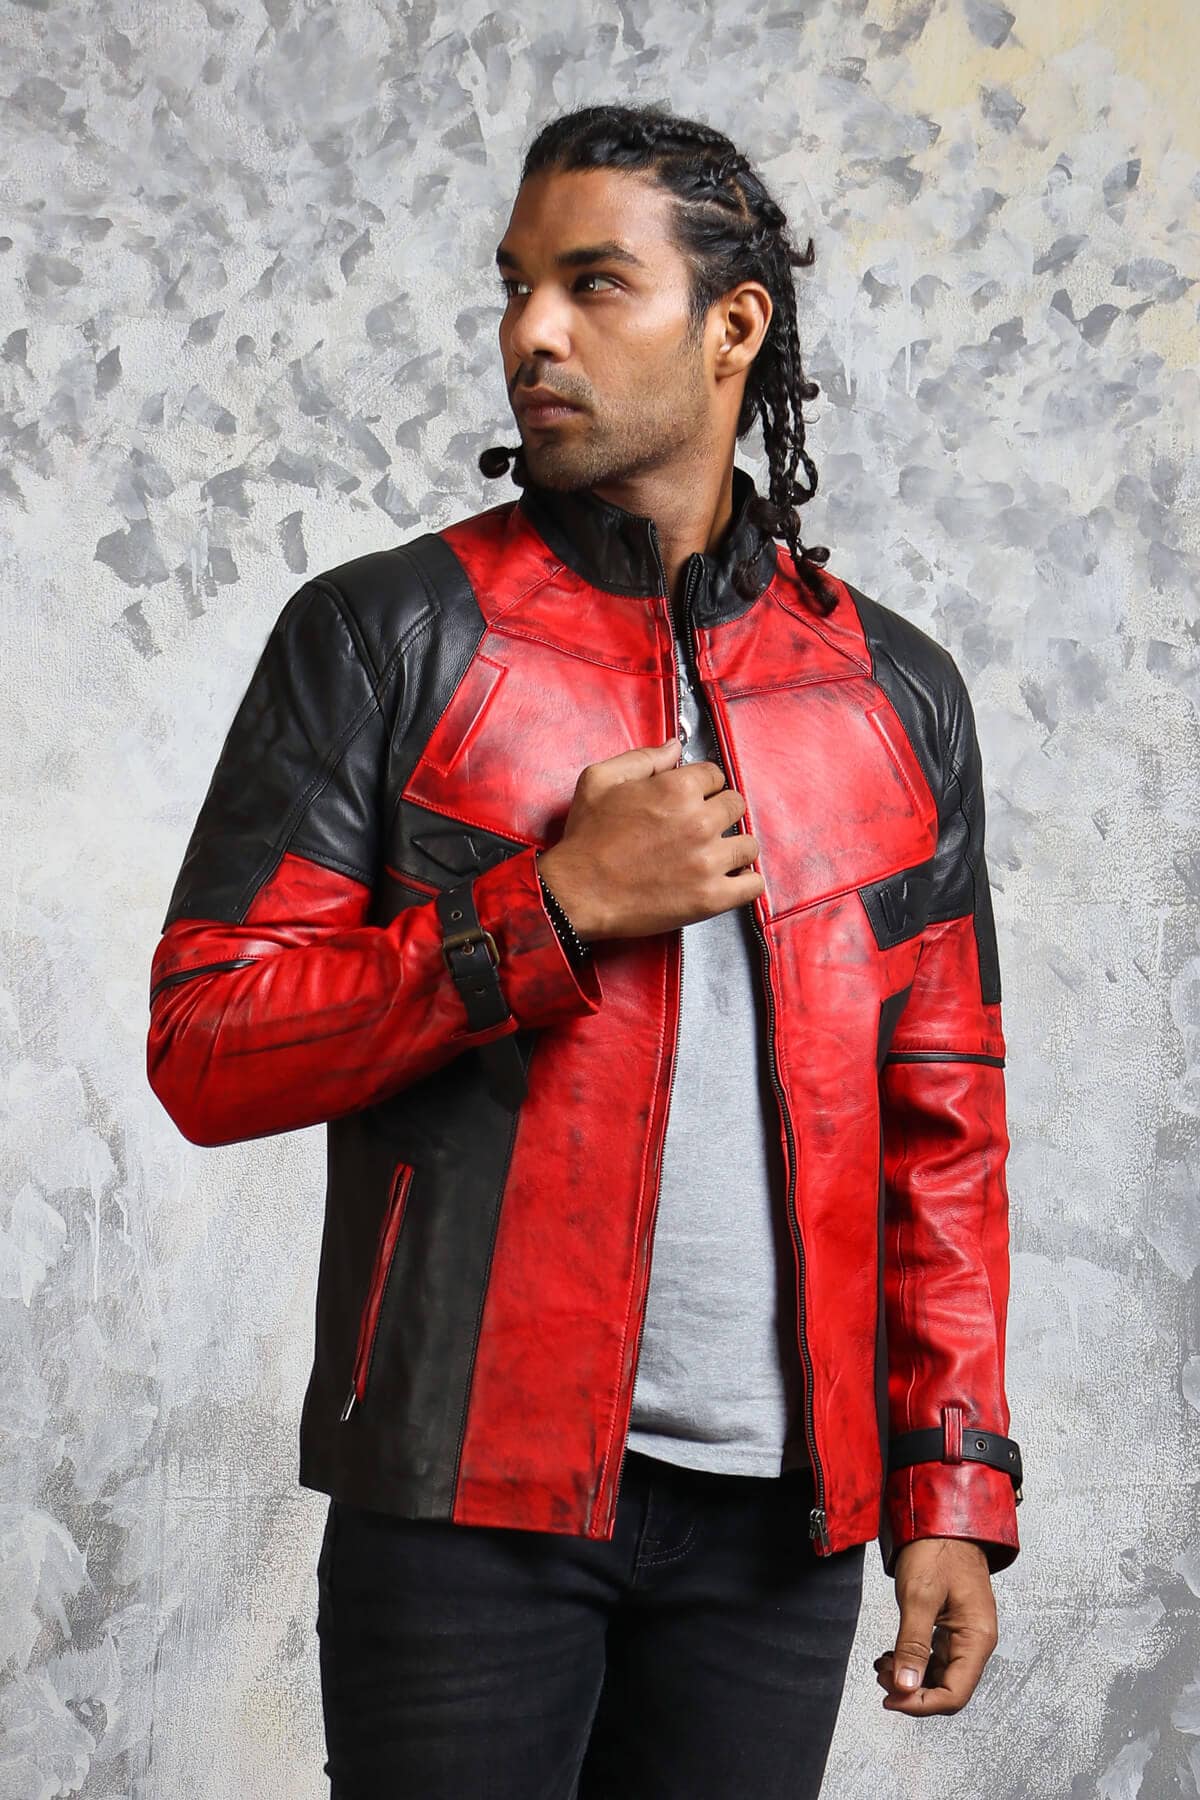 undtagelse dilemma Ren og skær Men's Biker Red and Black Leather Jacket - Hand Waxed Biker Jacket